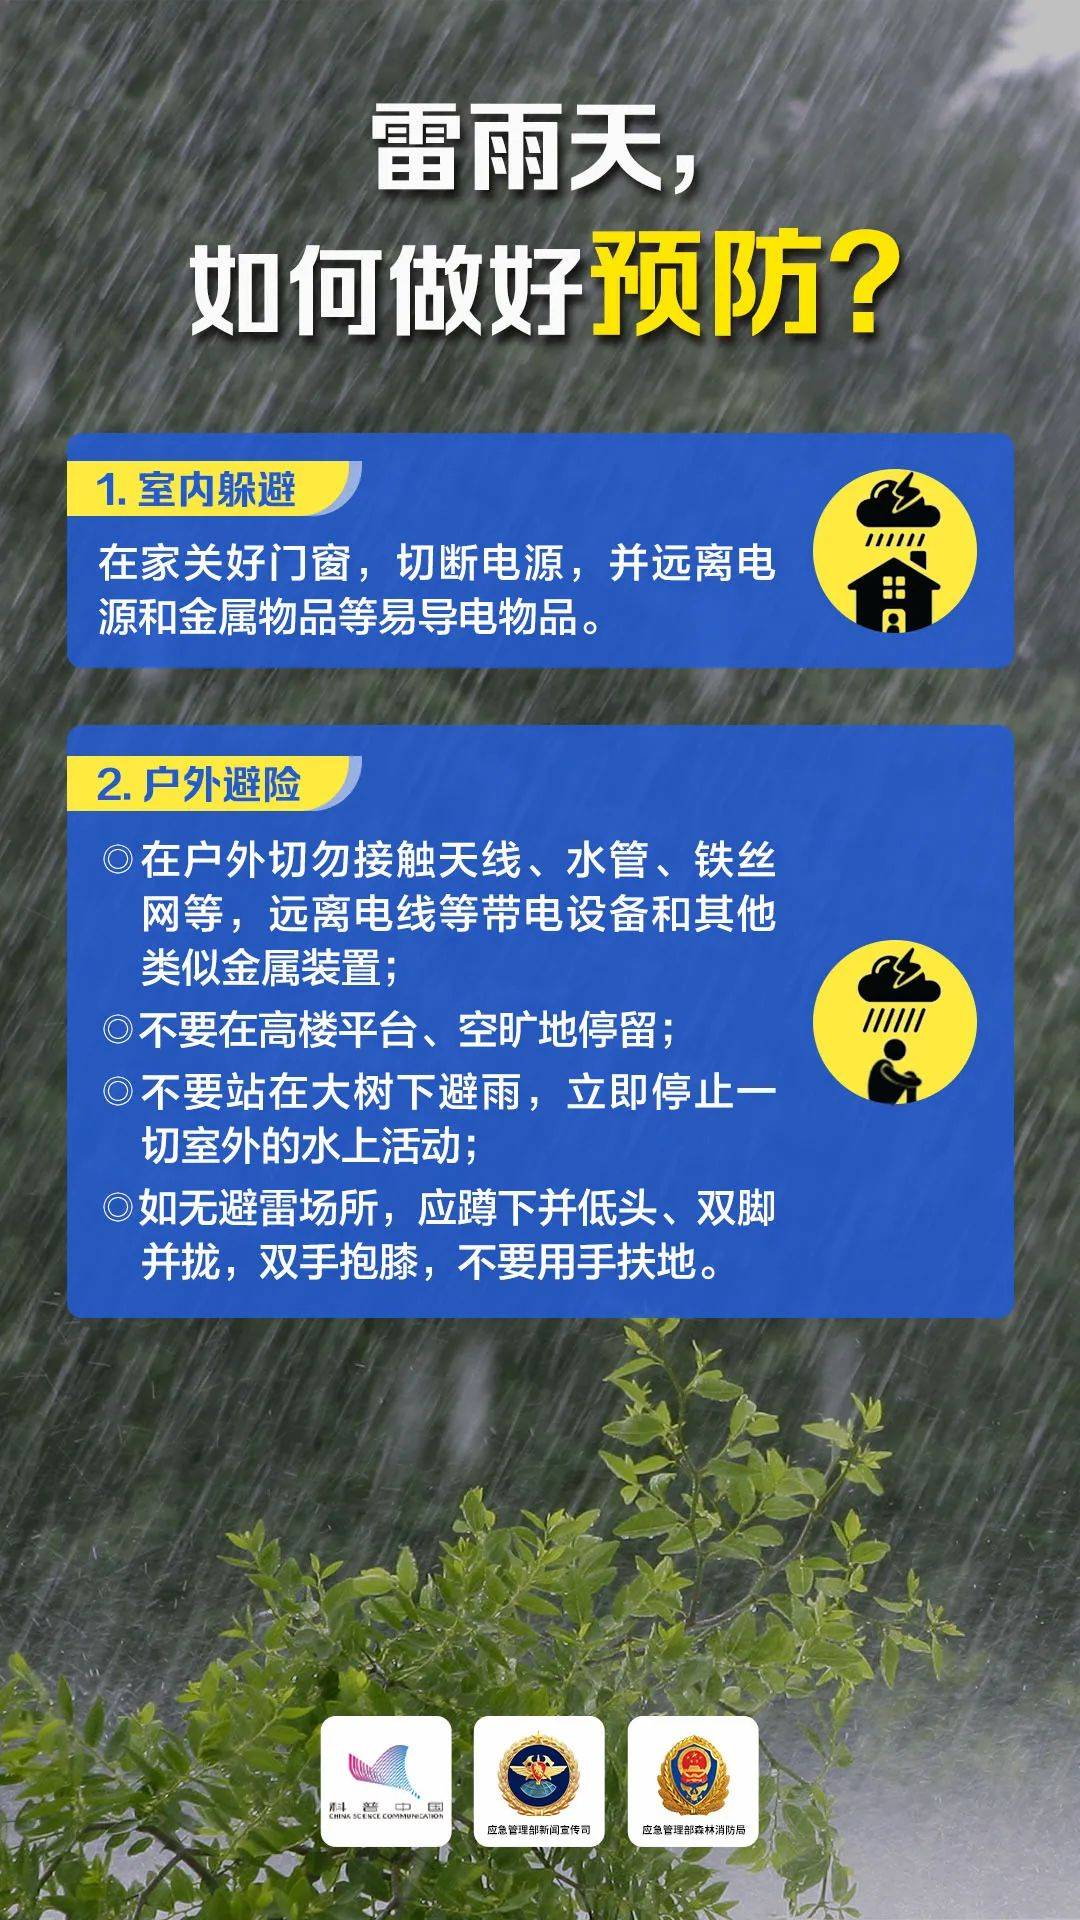 雷雨 阵风7~9级!阳谷最新天气预报